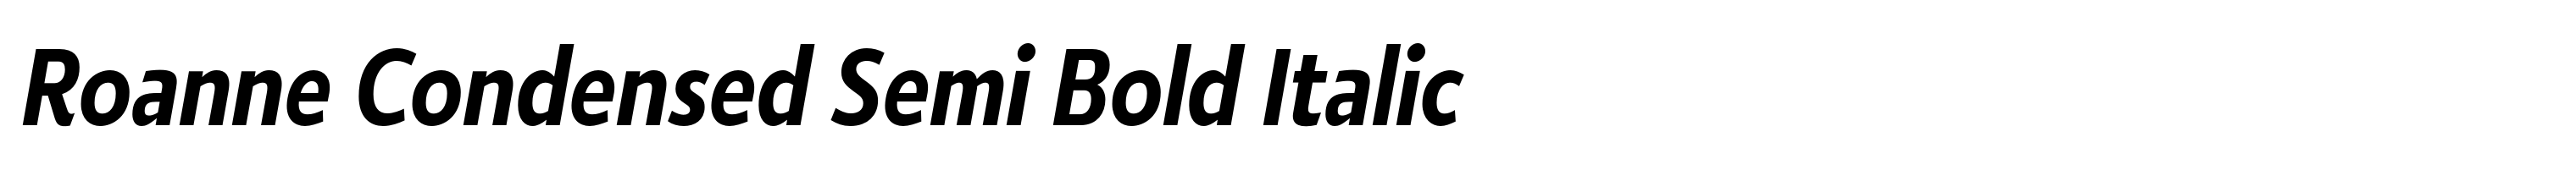 Roanne Condensed Semi Bold Italic